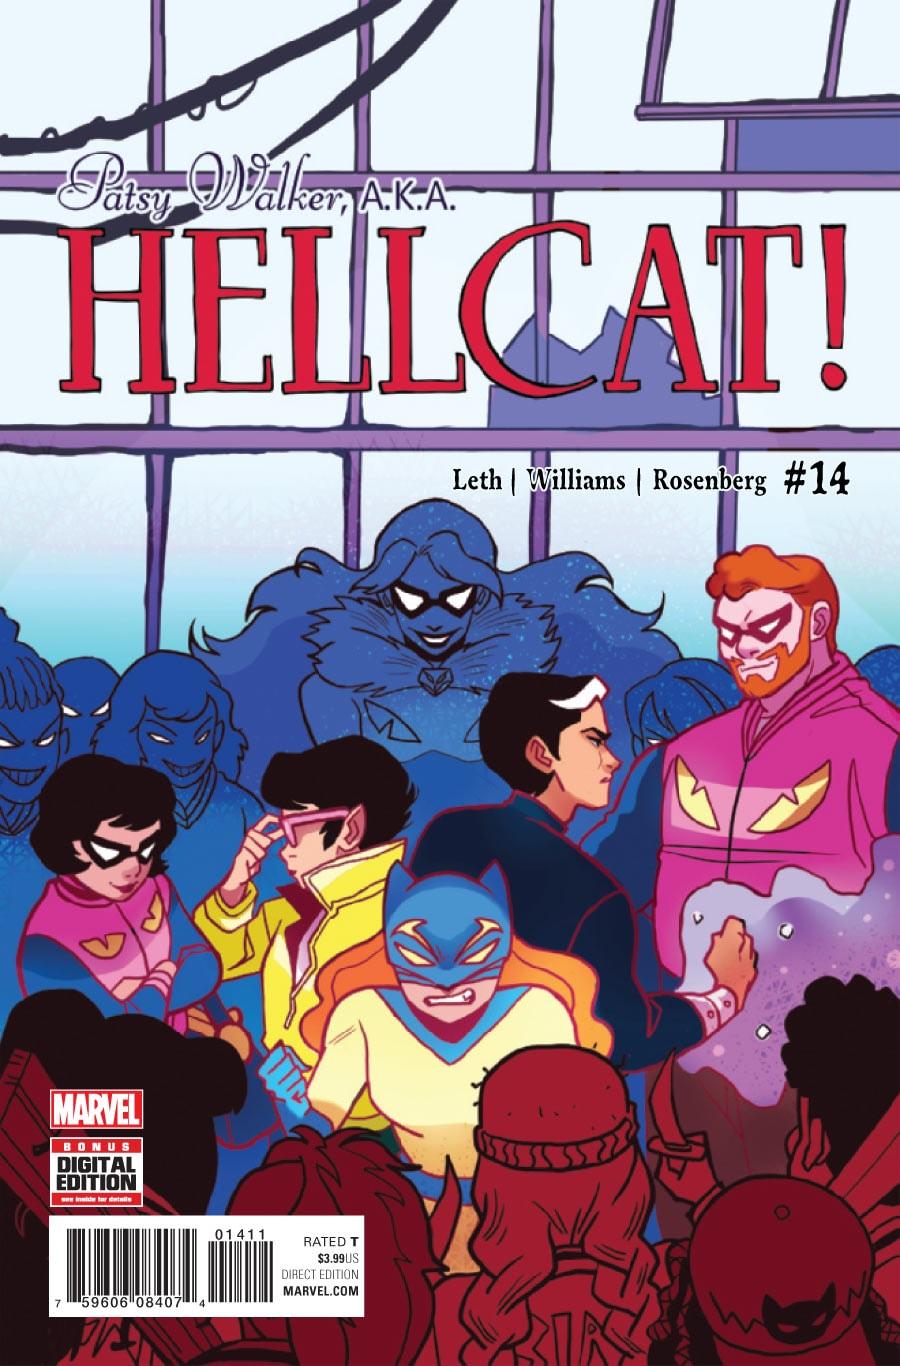 Patsy Walker, A.K.A. Hellcat! Vol. 1 #14